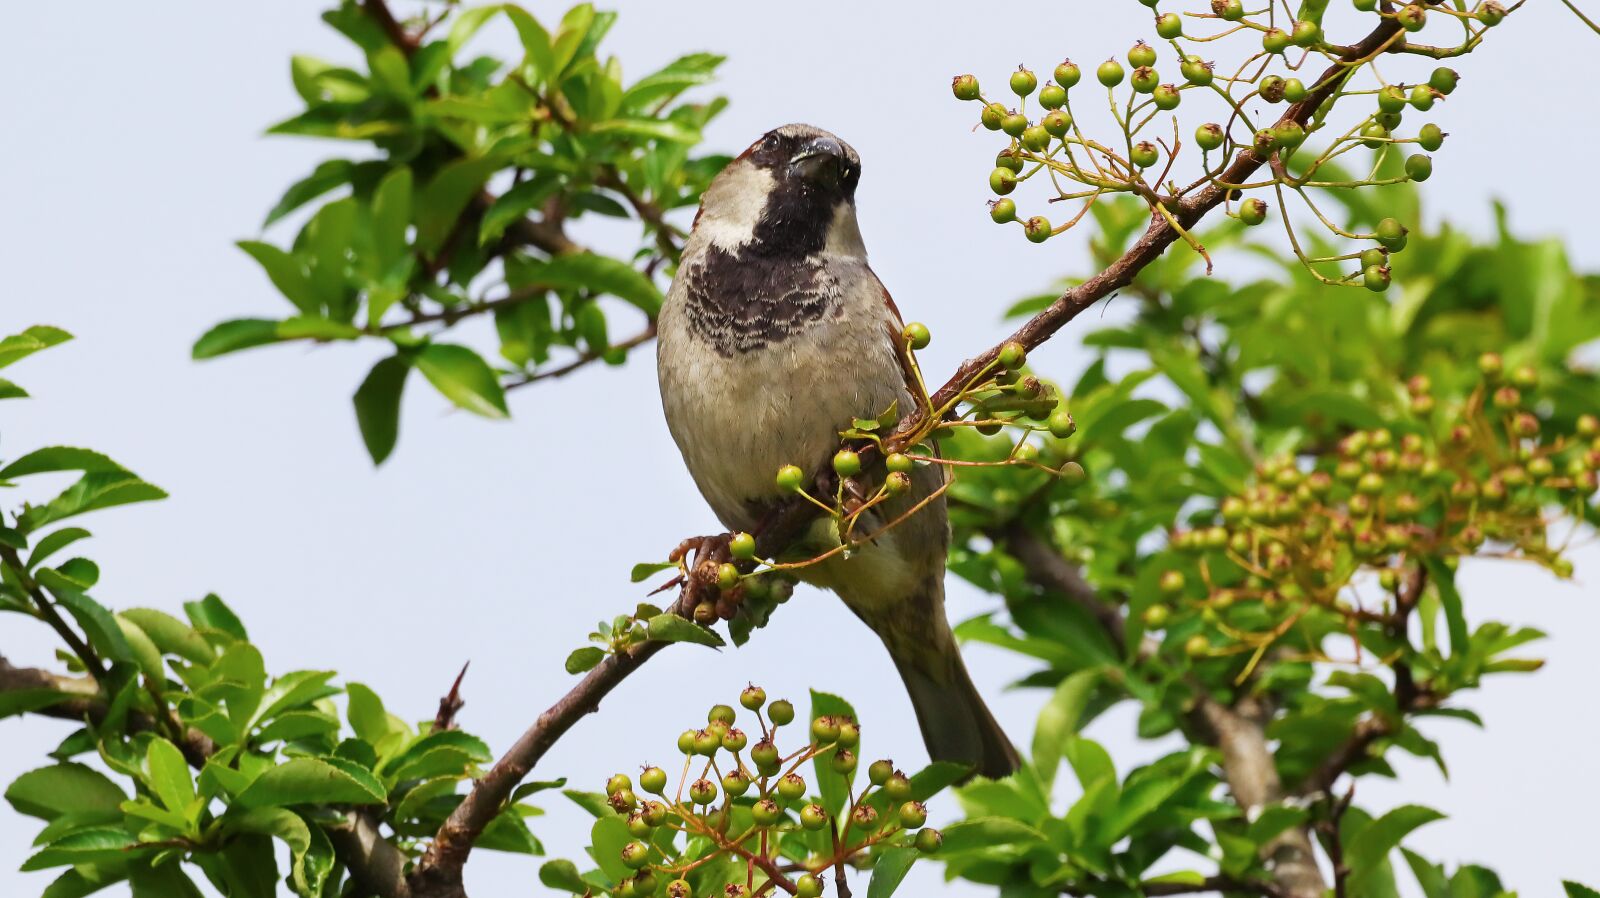 Canon EOS M50 (EOS Kiss M) sample photo. Sparrow, sperling, garden bird photography